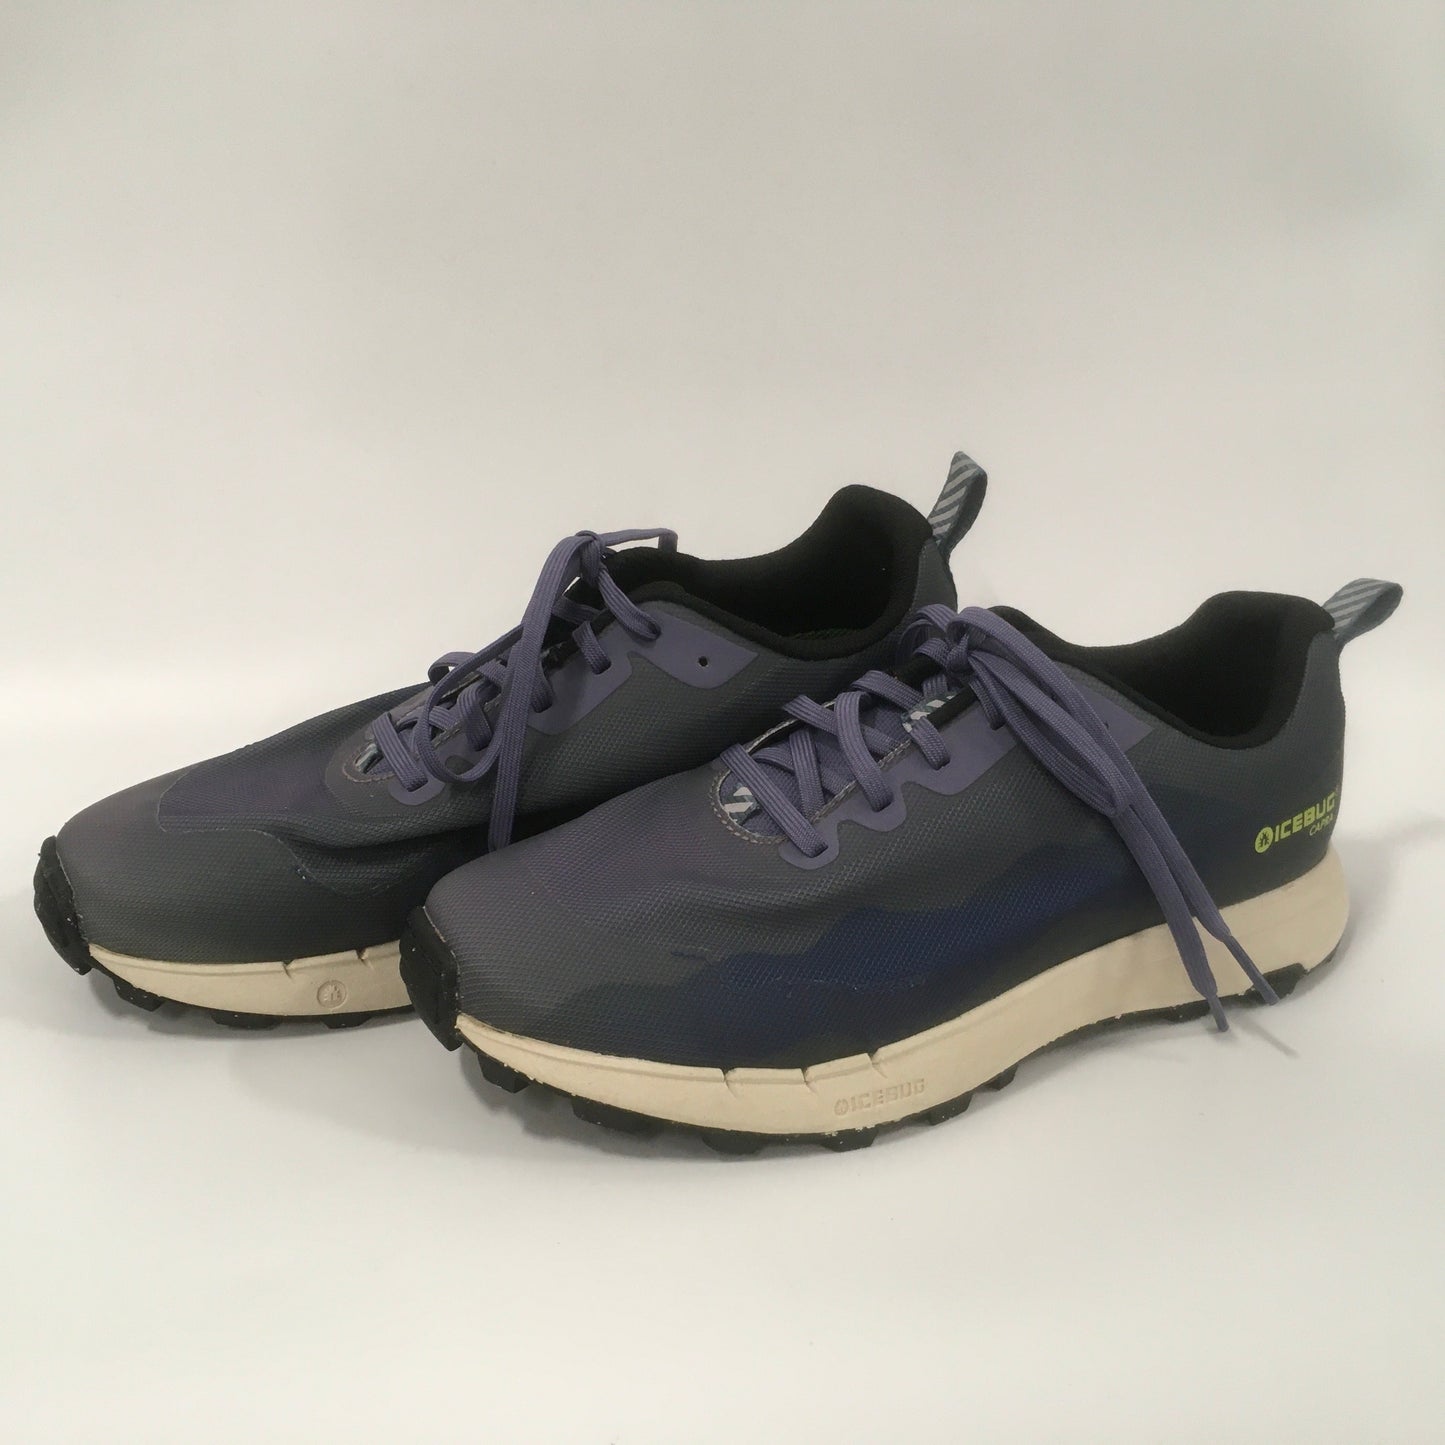 Blue & Purple Shoes Athletic Icebug Capra, Size 9.5